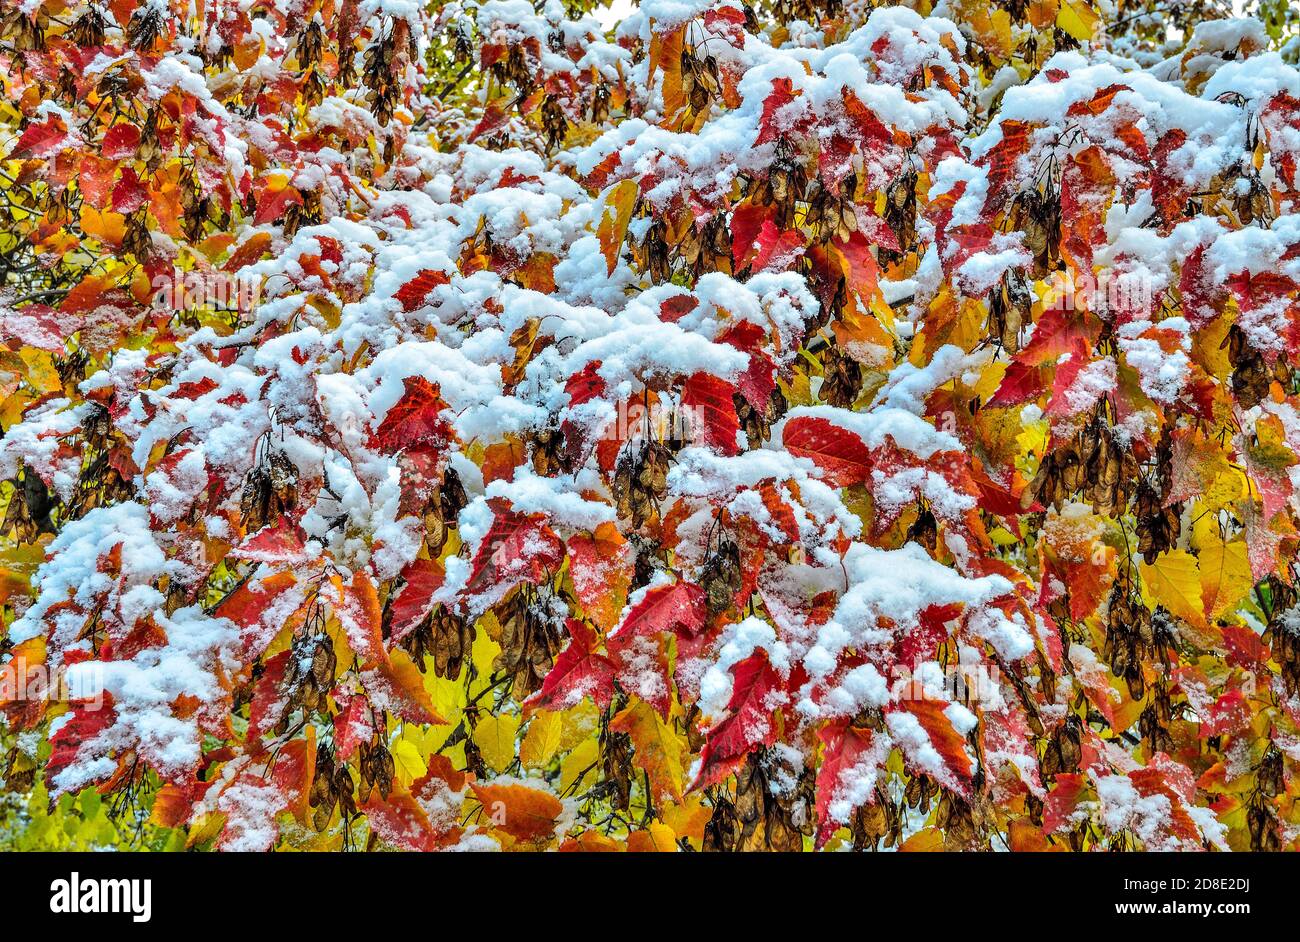 Erster Schnee auf buntem Herbstrot, orange, gelbem Laub des Acer Negundo-Baumes nach Schneefall. Letzter Tag des Herbstes - Winter beginnt. Schönheit der Natur Stockfoto